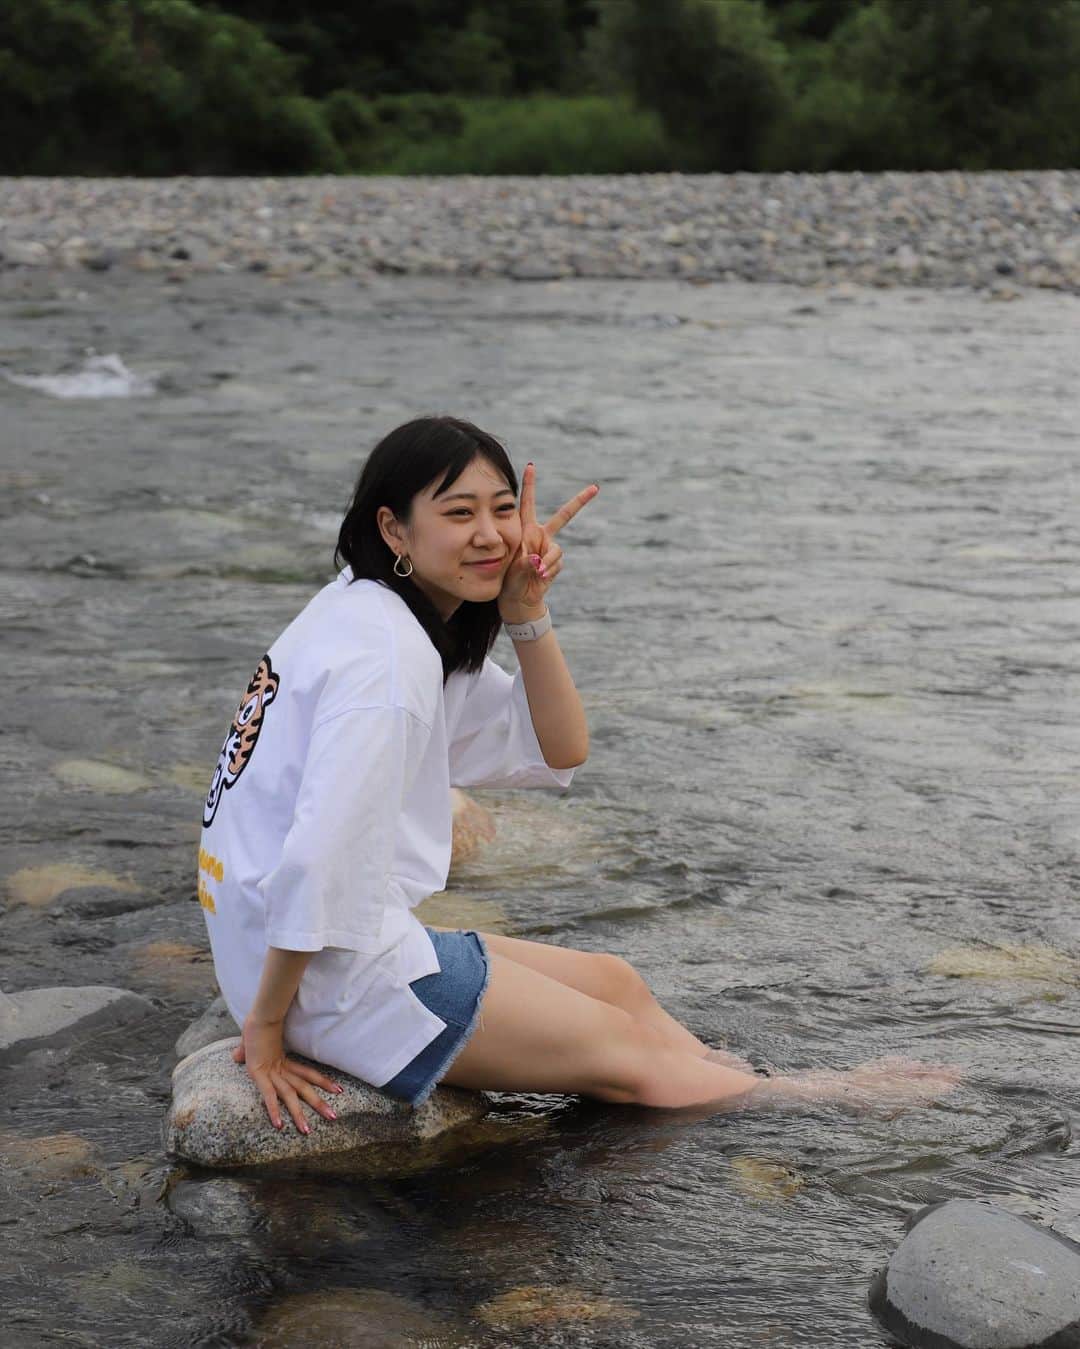 井田玲音名のインスタグラム：「ㅤㅤㅤㅤㅤㅤㅤㅤㅤㅤㅤㅤㅤ ㅤㅤㅤㅤㅤㅤㅤㅤㅤㅤㅤㅤㅤ 夏の思い出☀️ㅤㅤㅤㅤㅤㅤㅤㅤㅤㅤㅤㅤㅤ ㅤㅤㅤㅤㅤㅤㅤㅤㅤㅤㅤㅤㅤ ㅤㅤㅤㅤㅤㅤㅤㅤㅤㅤㅤㅤㅤ 少し前に載せた長野旅行の時の写真♪ㅤㅤㅤㅤㅤㅤㅤㅤㅤㅤㅤㅤㅤ ㅤㅤㅤㅤㅤㅤㅤㅤㅤㅤㅤㅤㅤ お父さんにカメラ渡して撮ってもらったもの！なかなかいい写真！笑ㅤㅤㅤㅤㅤㅤㅤㅤㅤㅤㅤㅤㅤ ㅤㅤㅤㅤㅤㅤㅤㅤㅤㅤㅤㅤㅤ #夏の思い出」